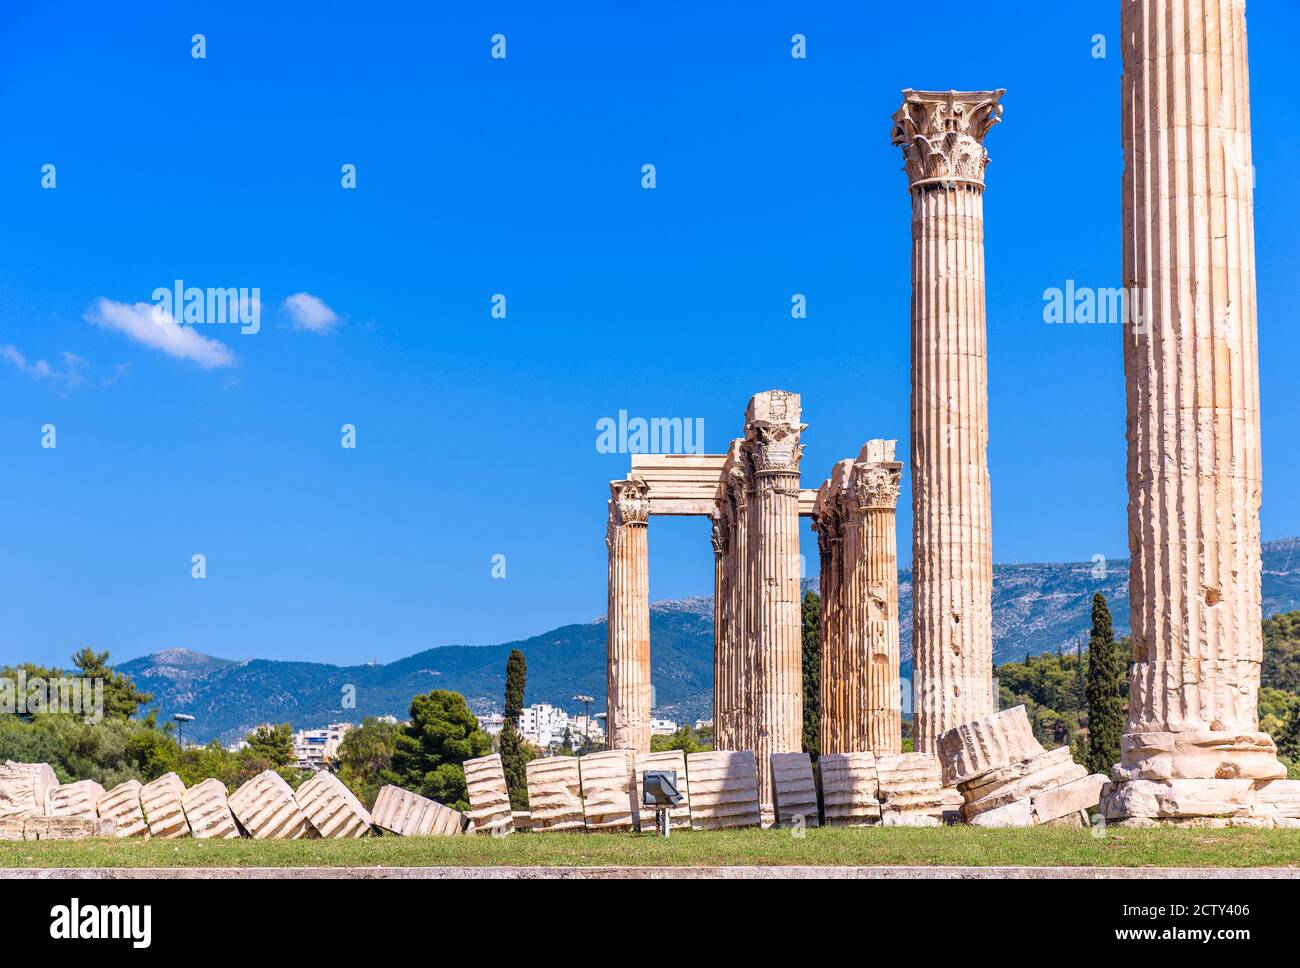 Tempio Zeus con colonna caduta, maestose antiche rovine greche classiche ad Atene, Grecia. E' un famoso punto di riferimento di Atene. Resti di grandi edifici antichi Foto Stock